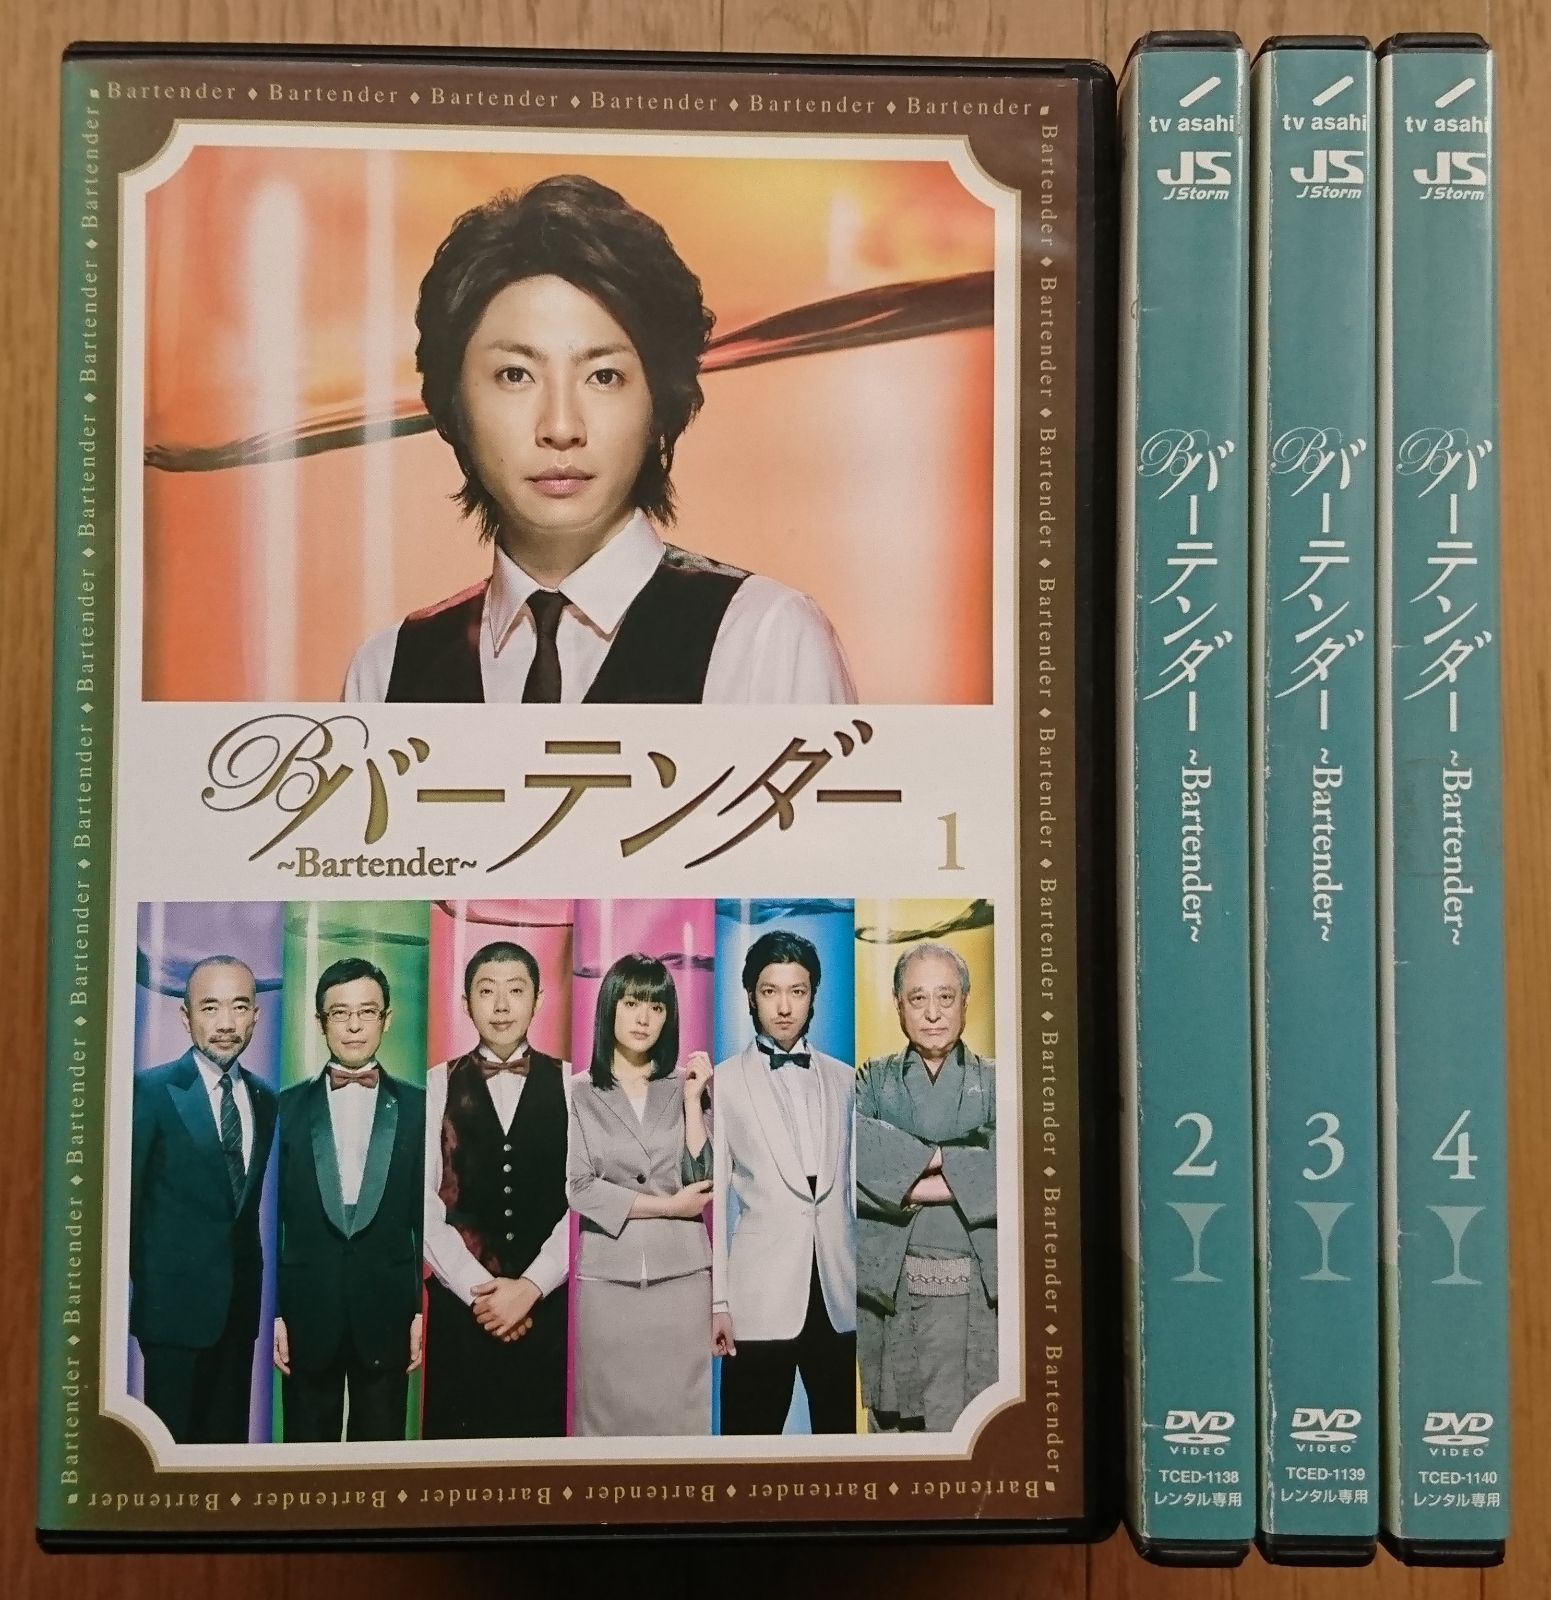 【レンタル版DVD】バーテンダー 全4巻セット 出演:相葉雅紀 ※新ケース付きです